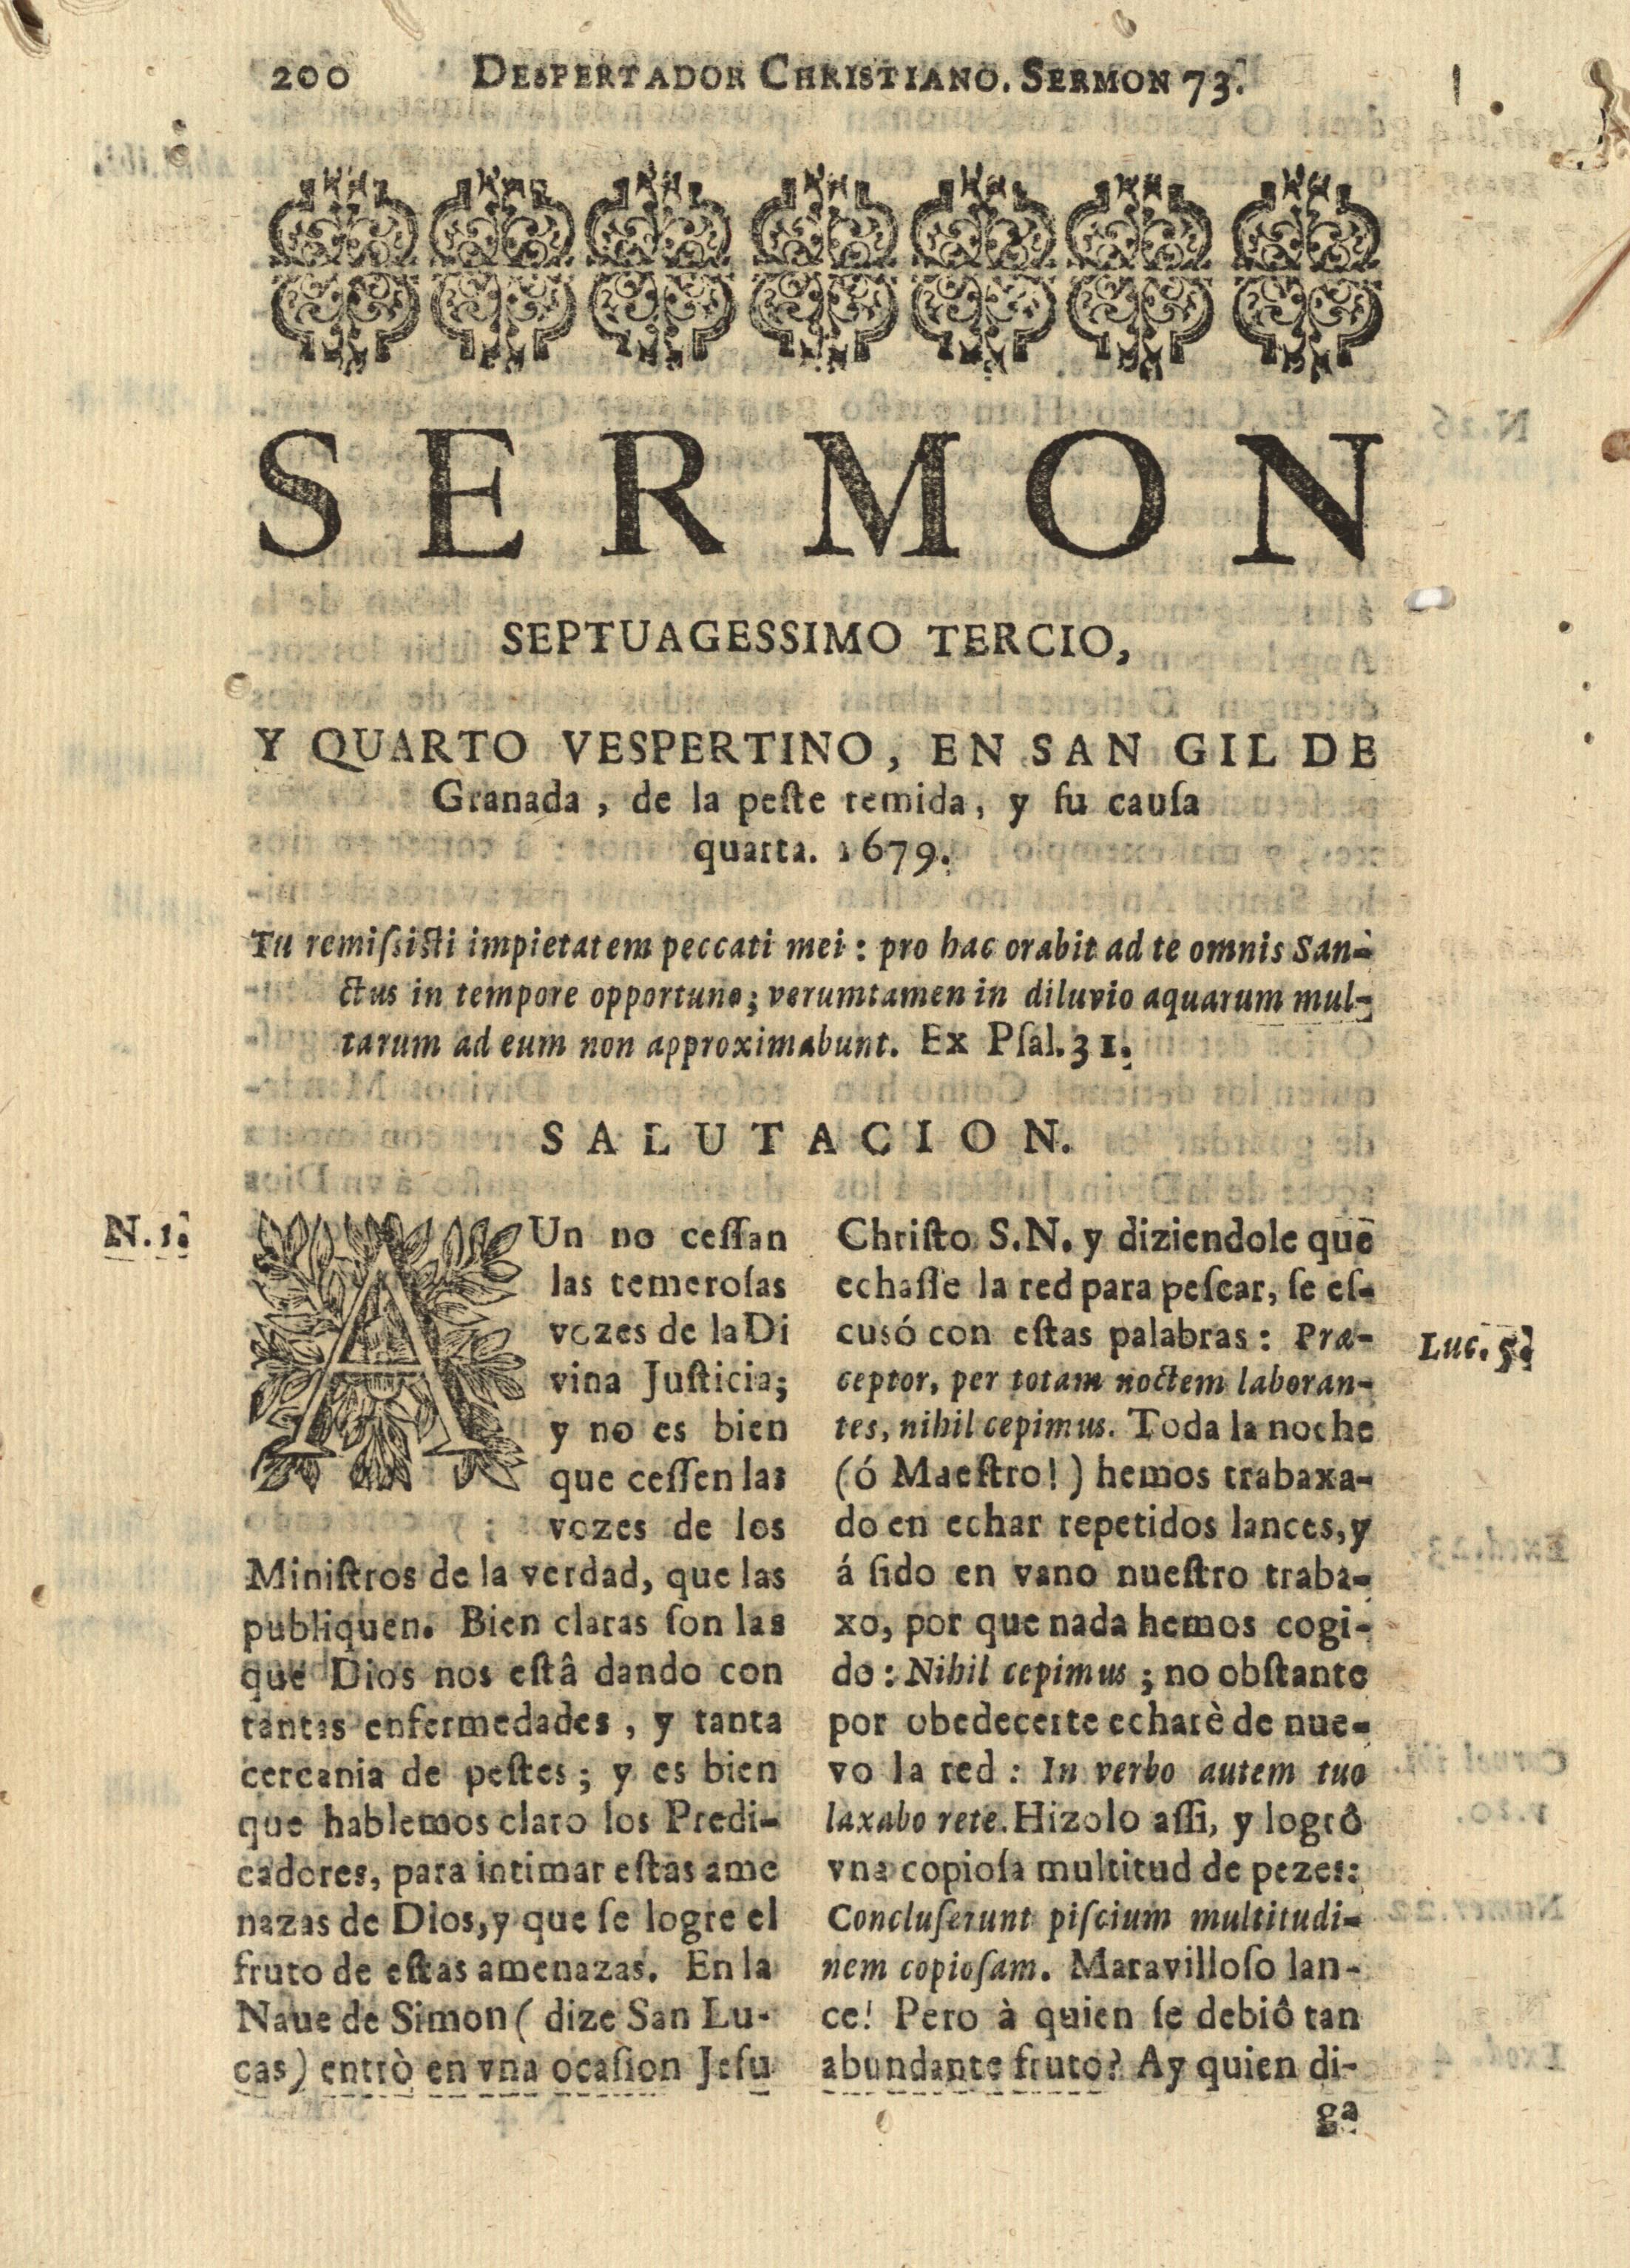 Sermon septuagessimo tercio, y quarto vespertino, en San Gil de Granada, de la peste temida, y su causa quarta 1679